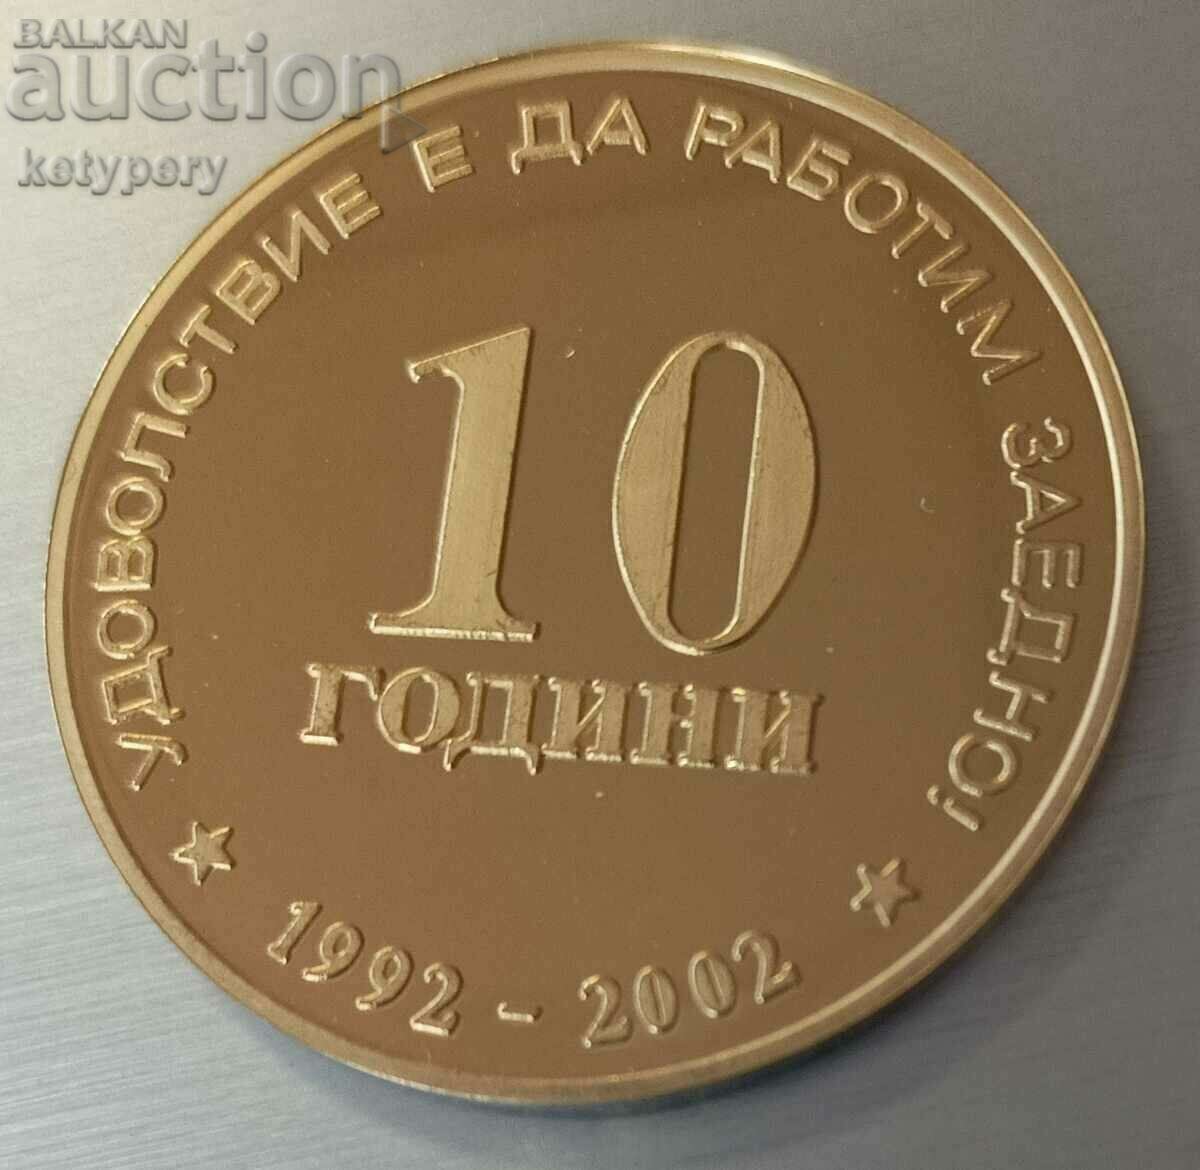 10 години Юнионбанк - Възпоменателен медал